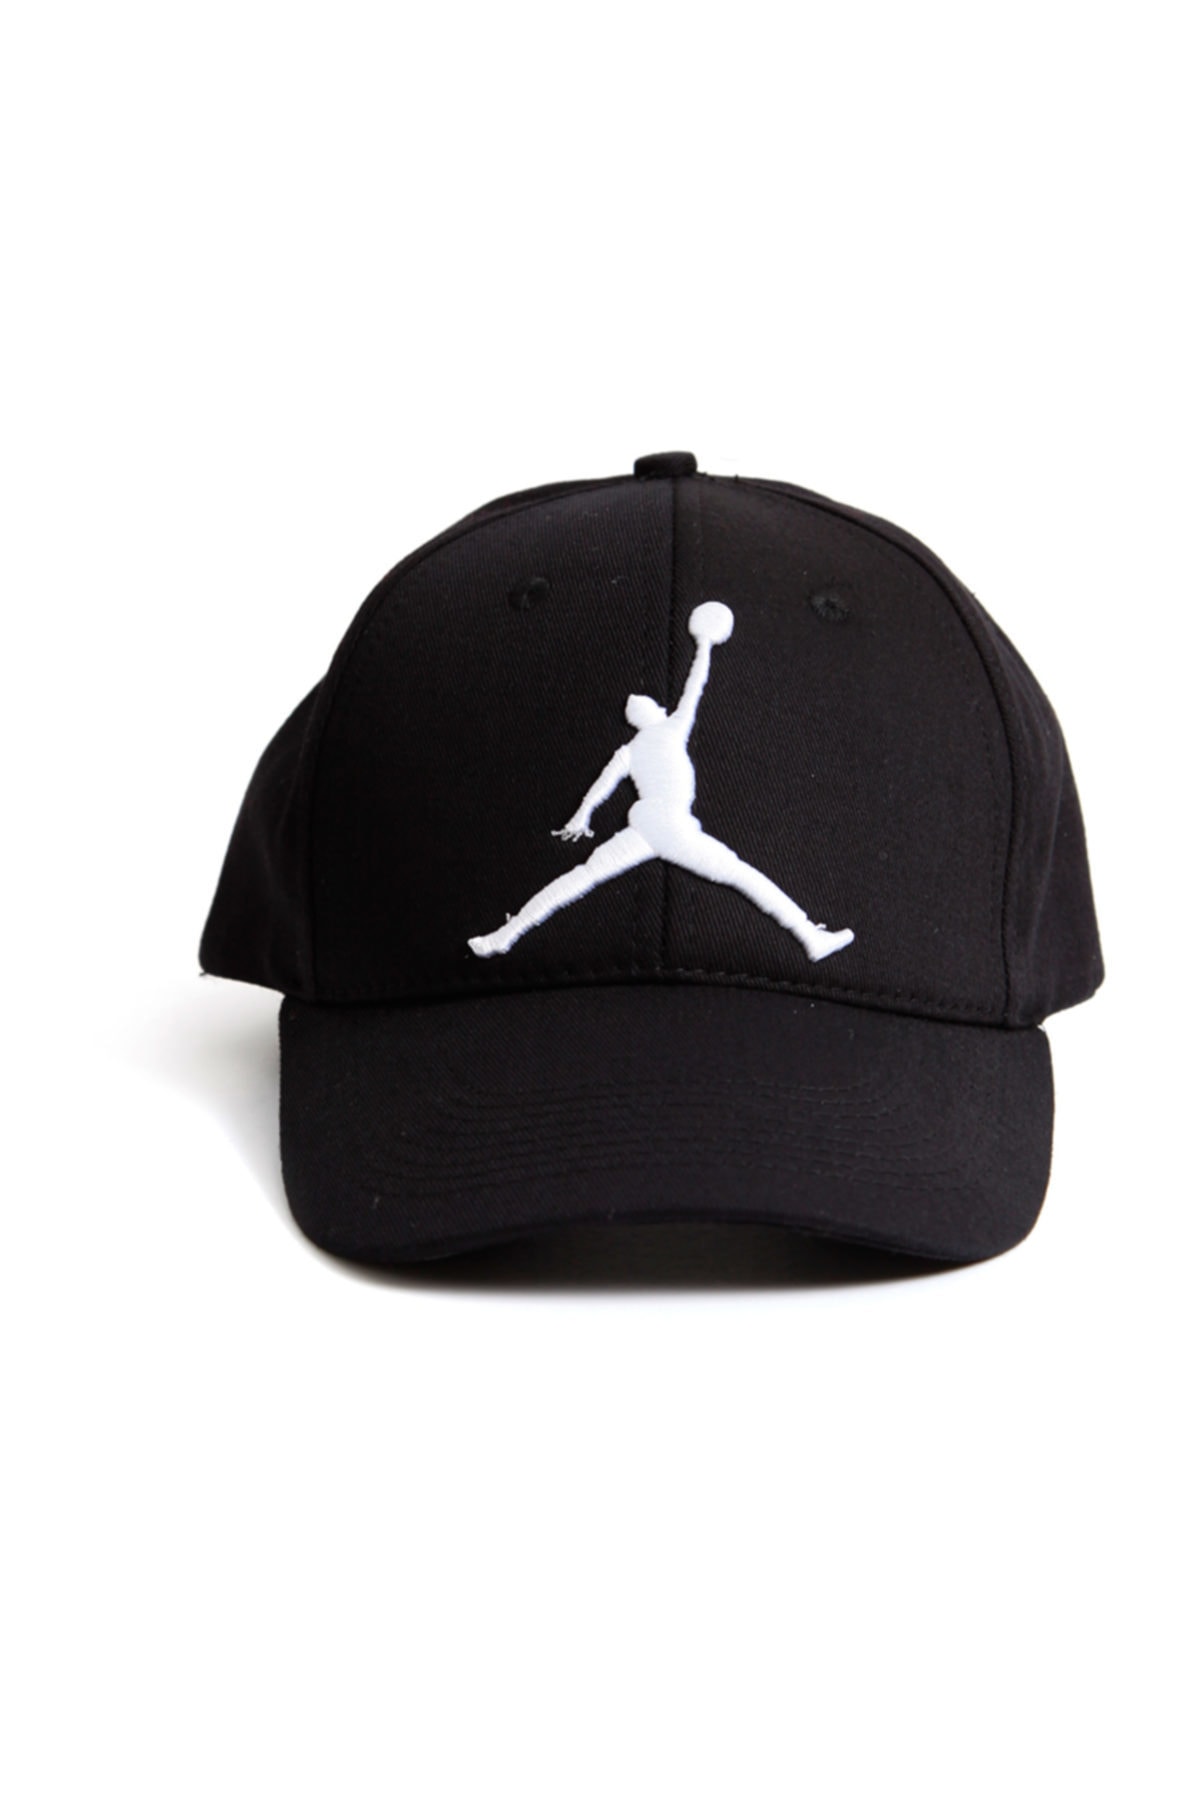 Kapin Jordan Basketbol Şapka